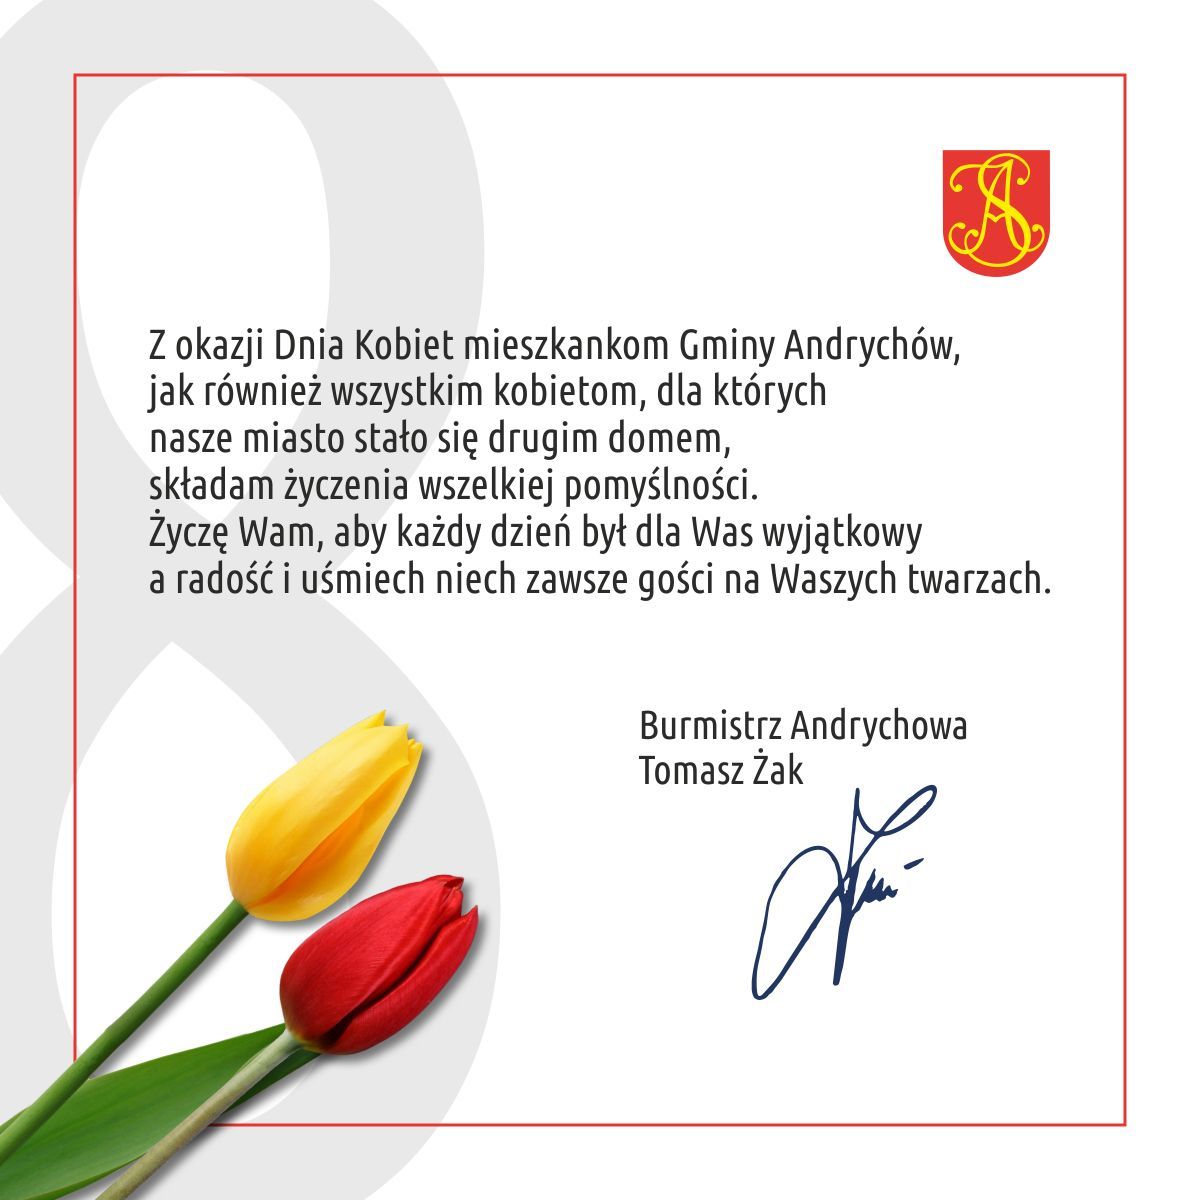 Życzenia na Dzień Kobiet od burmistrza Andrychowa